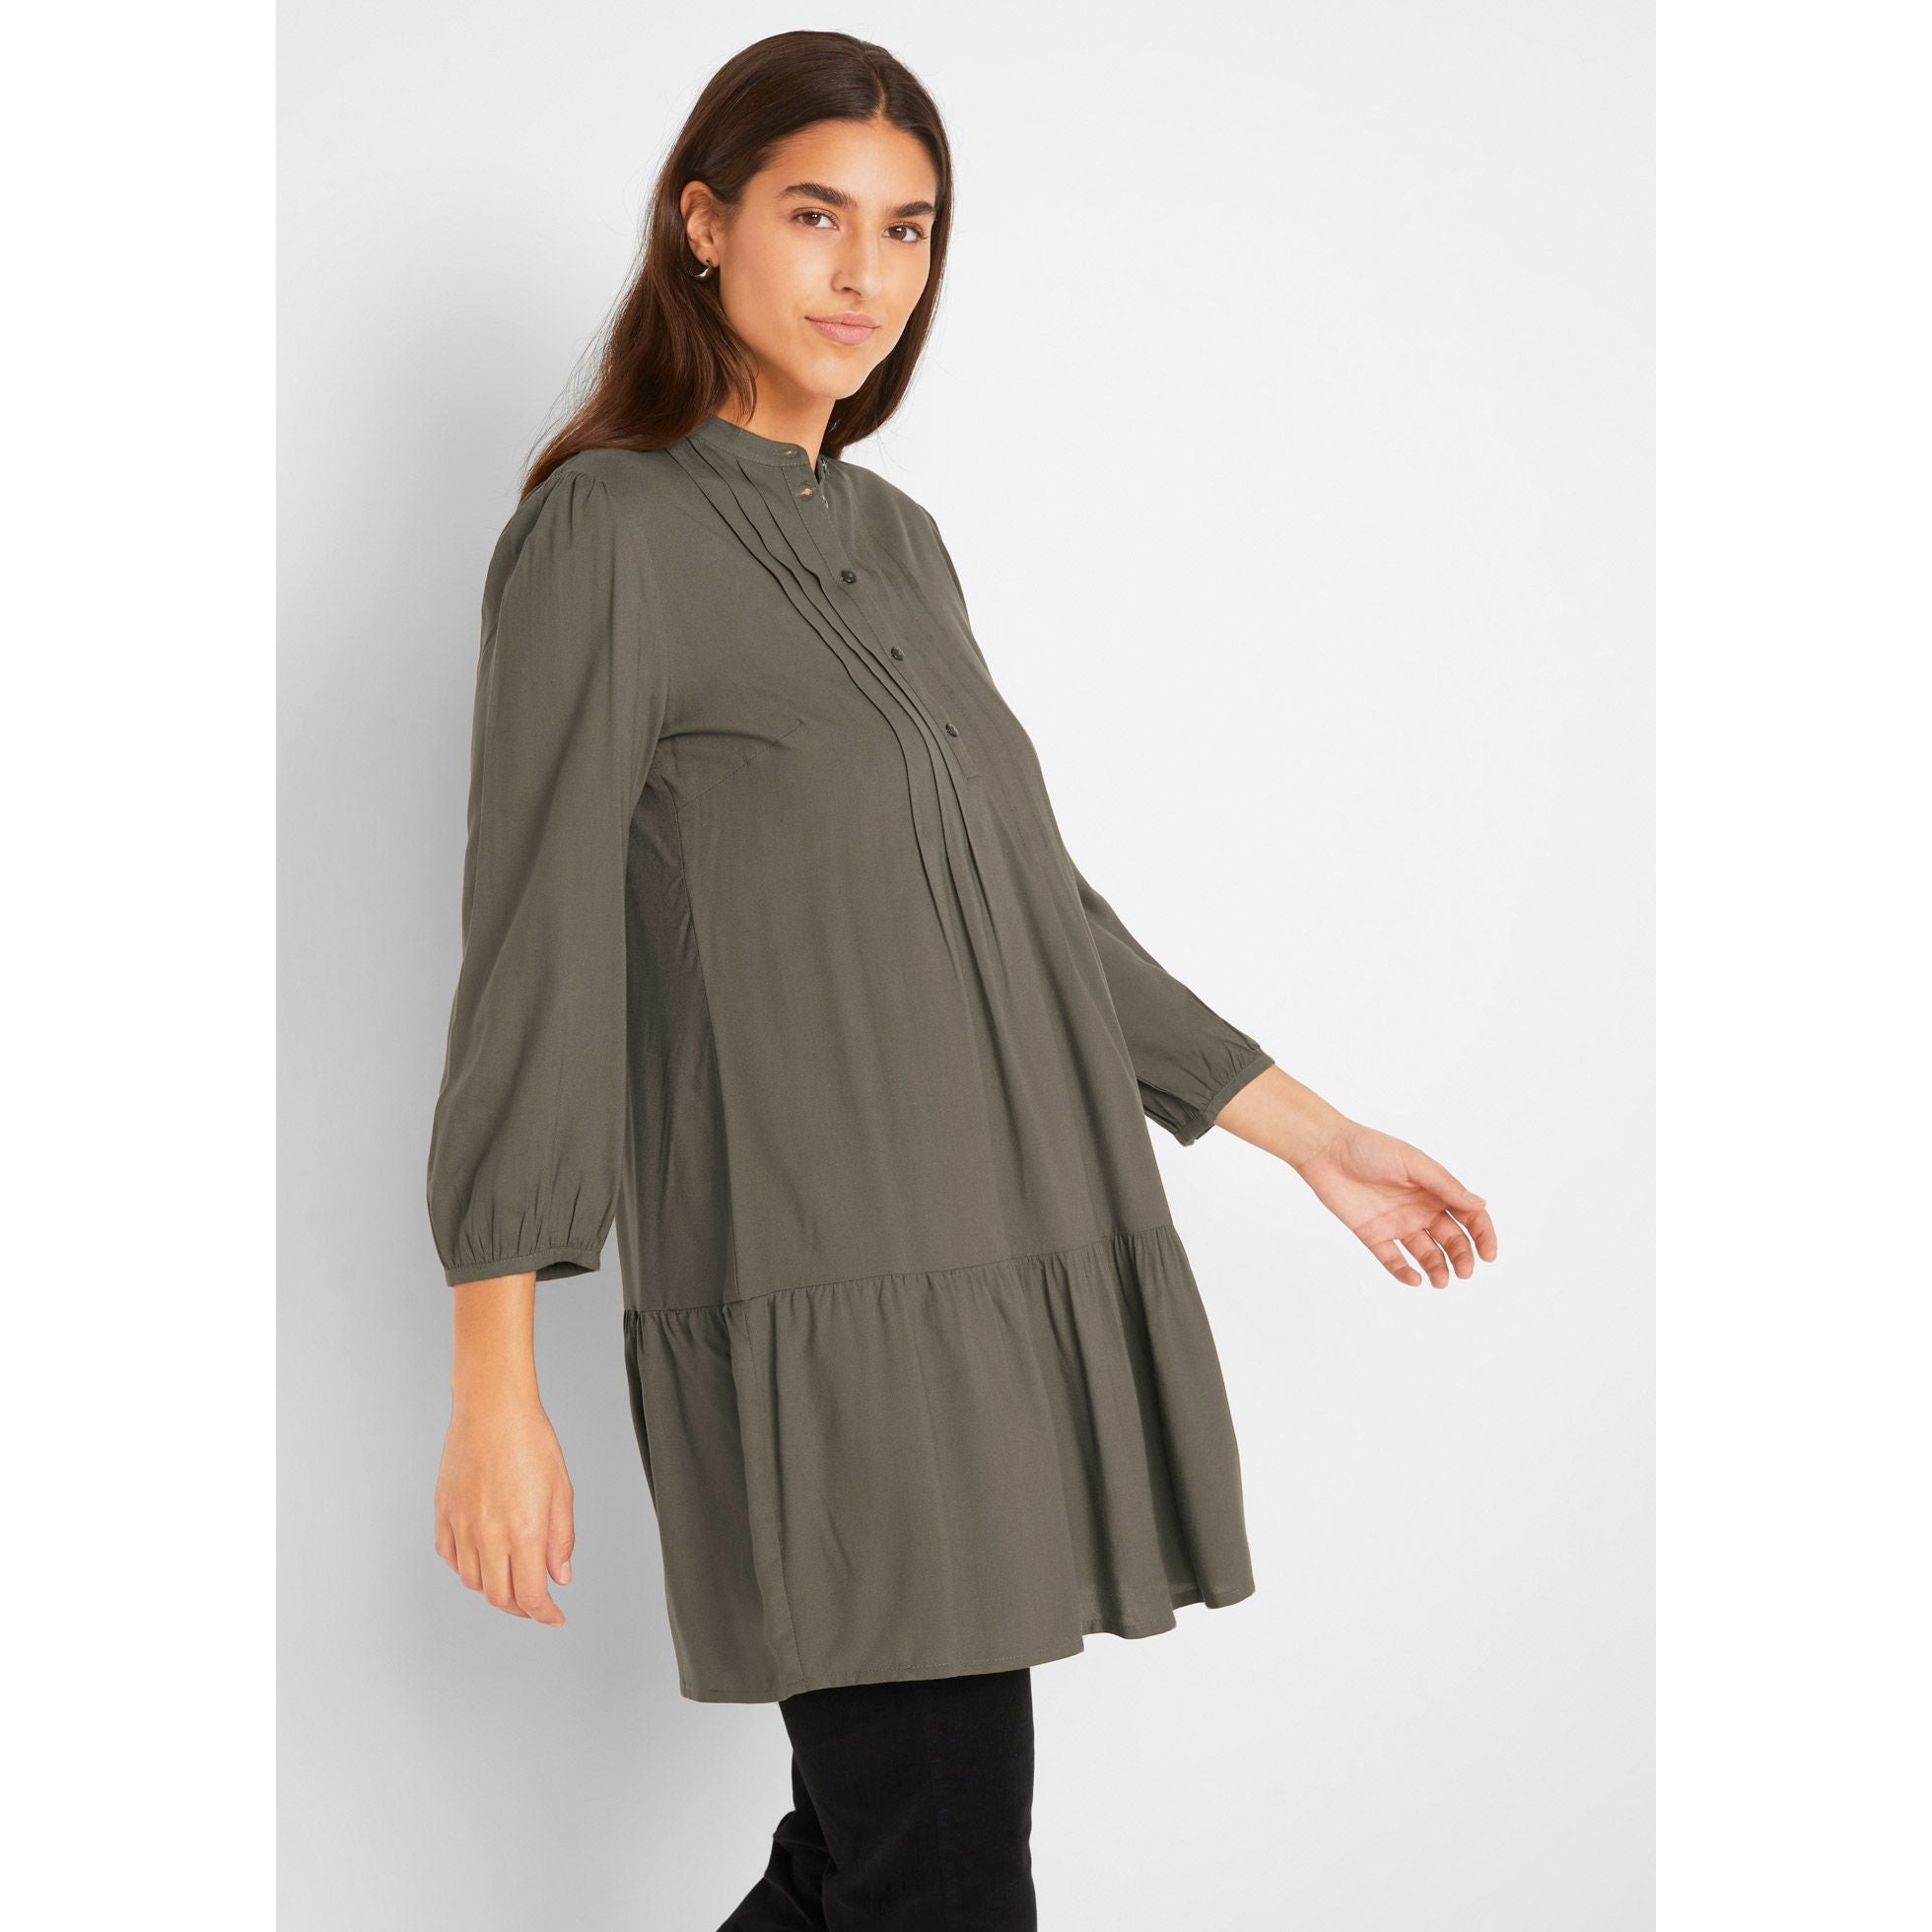 http://missbellashop.com/cdn/shop/products/bonprix-olive-longline-blouse.jpg?v=1661238376